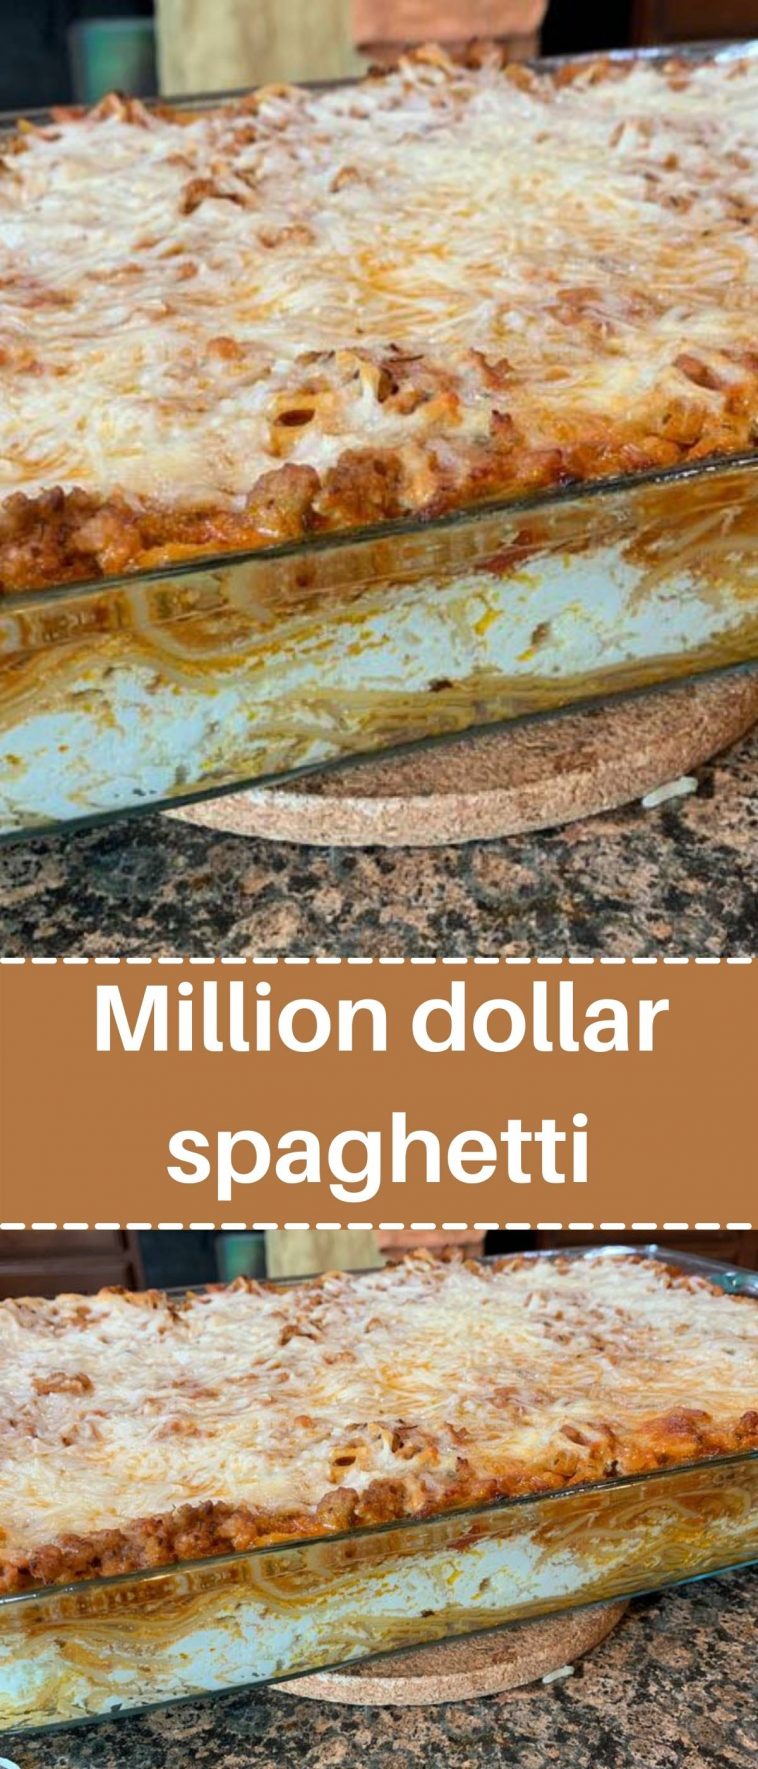 Million dollar spaghetti